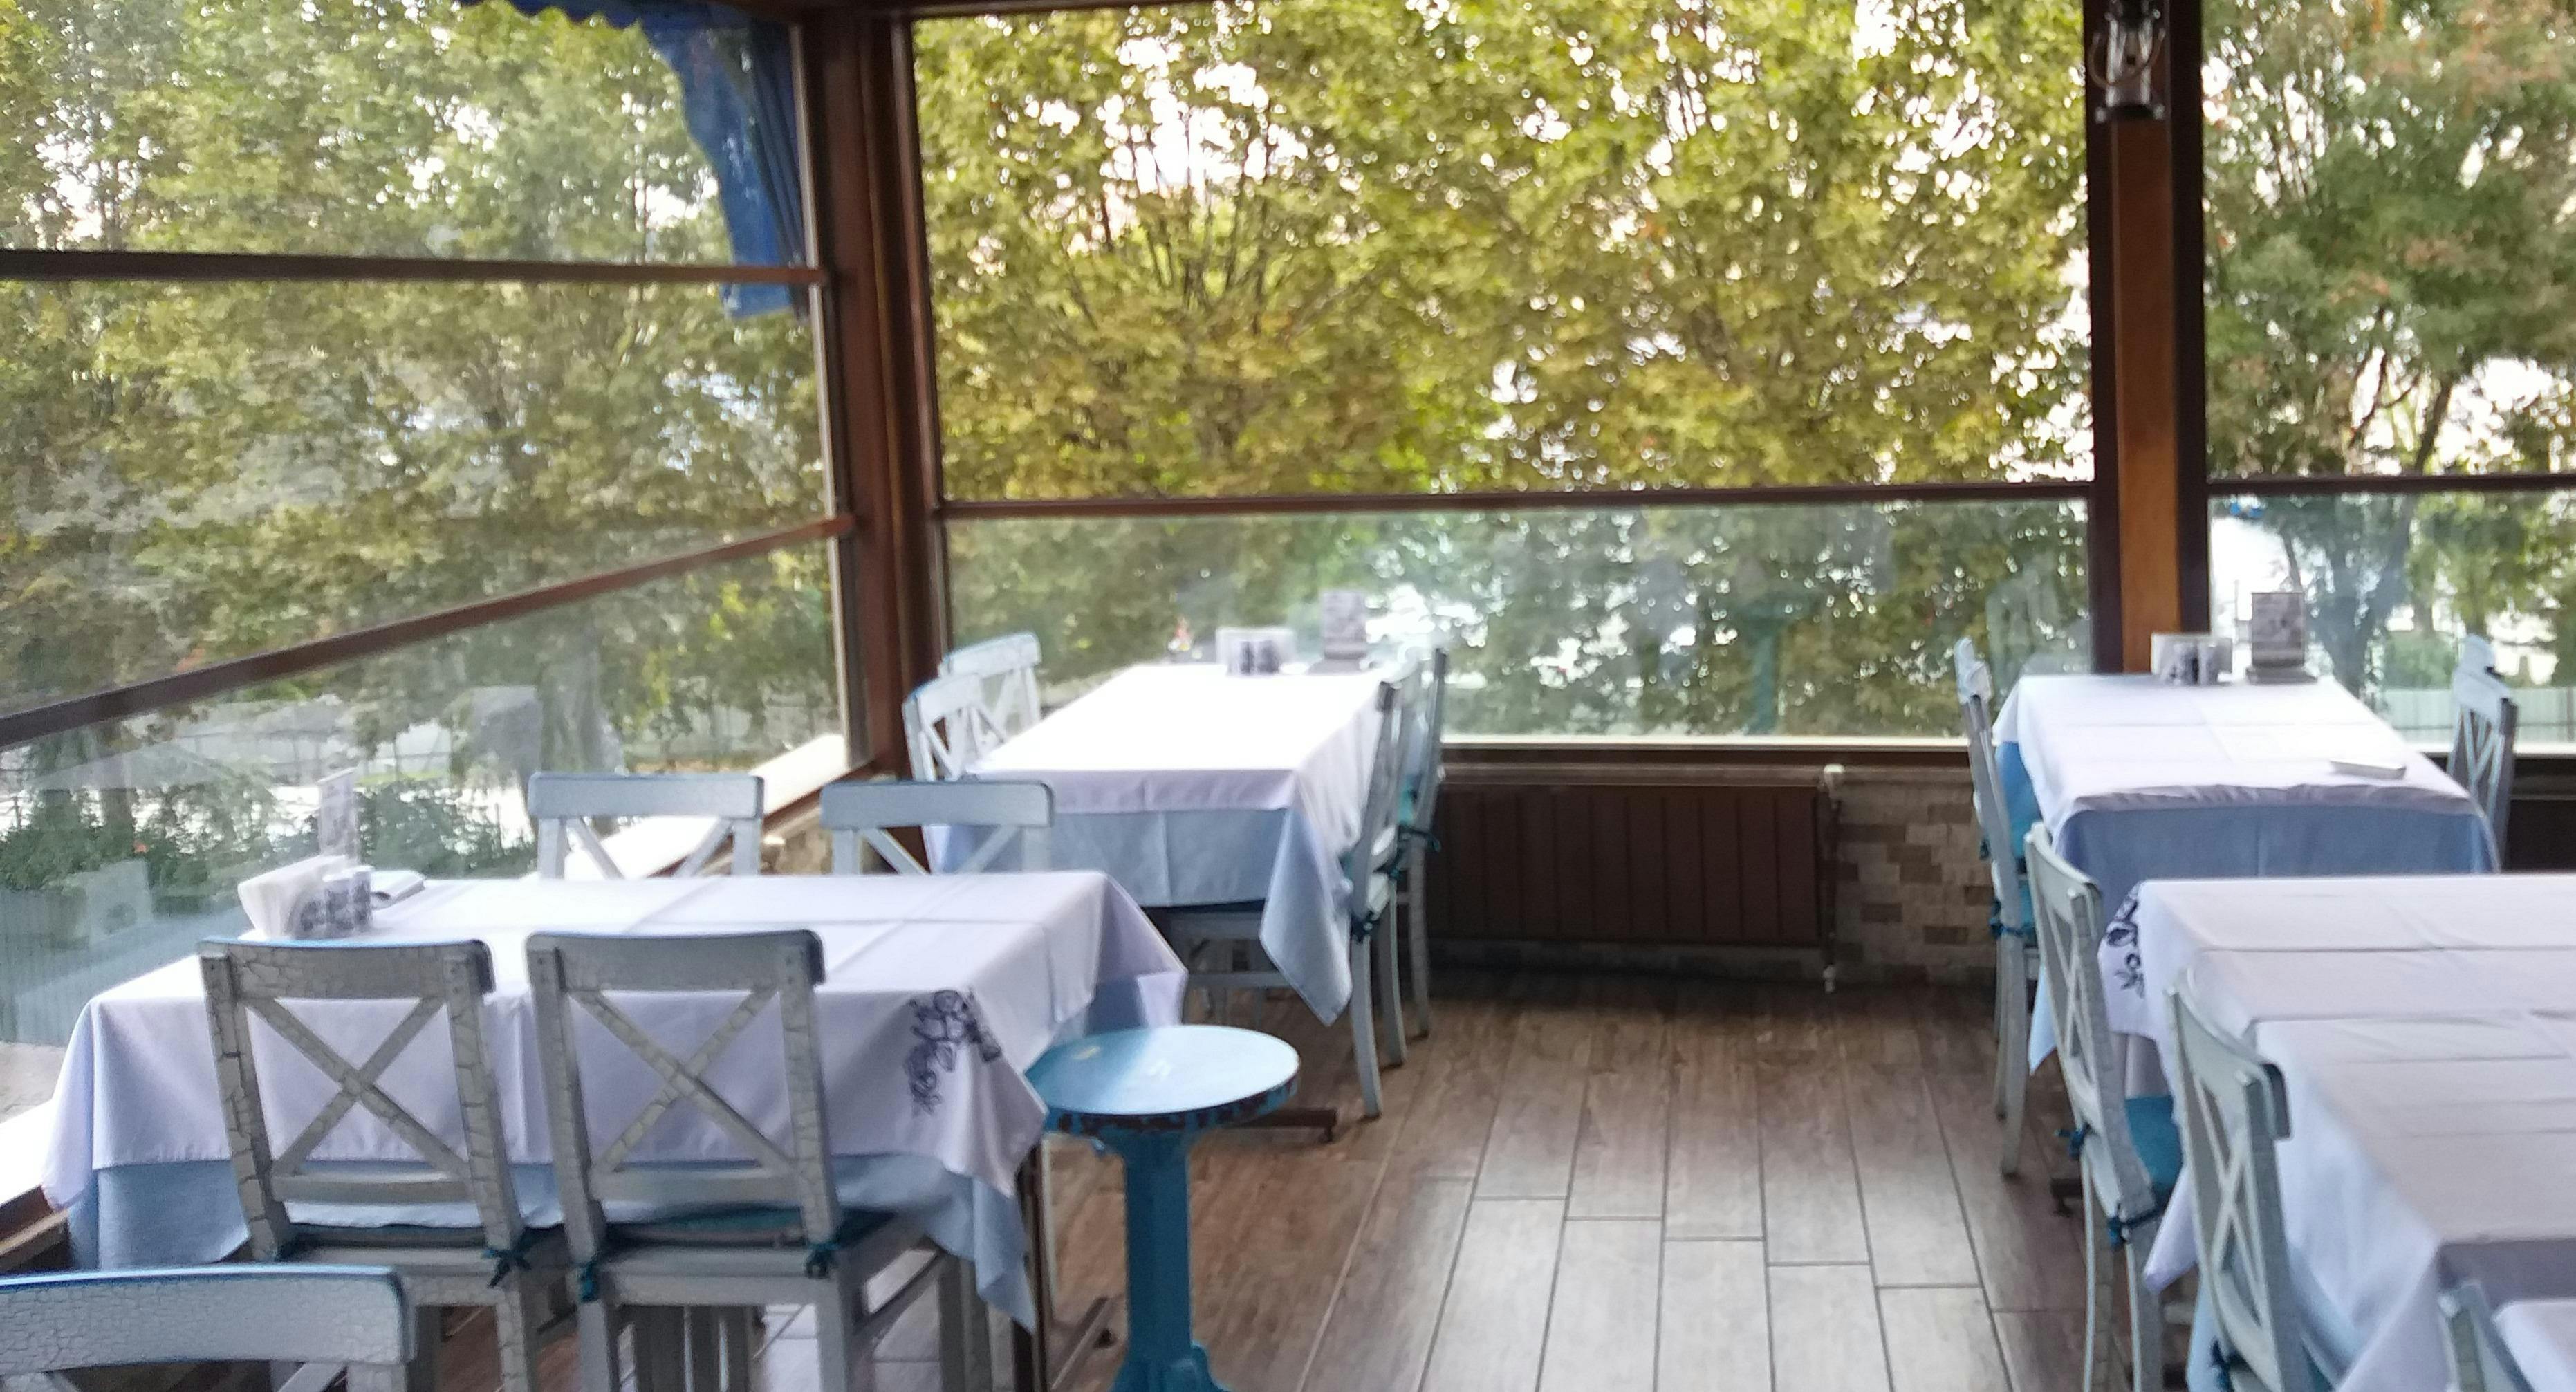 Fatih, Istanbul şehrindeki Cibali Vasilis Balıkçısı restoranının fotoğrafı